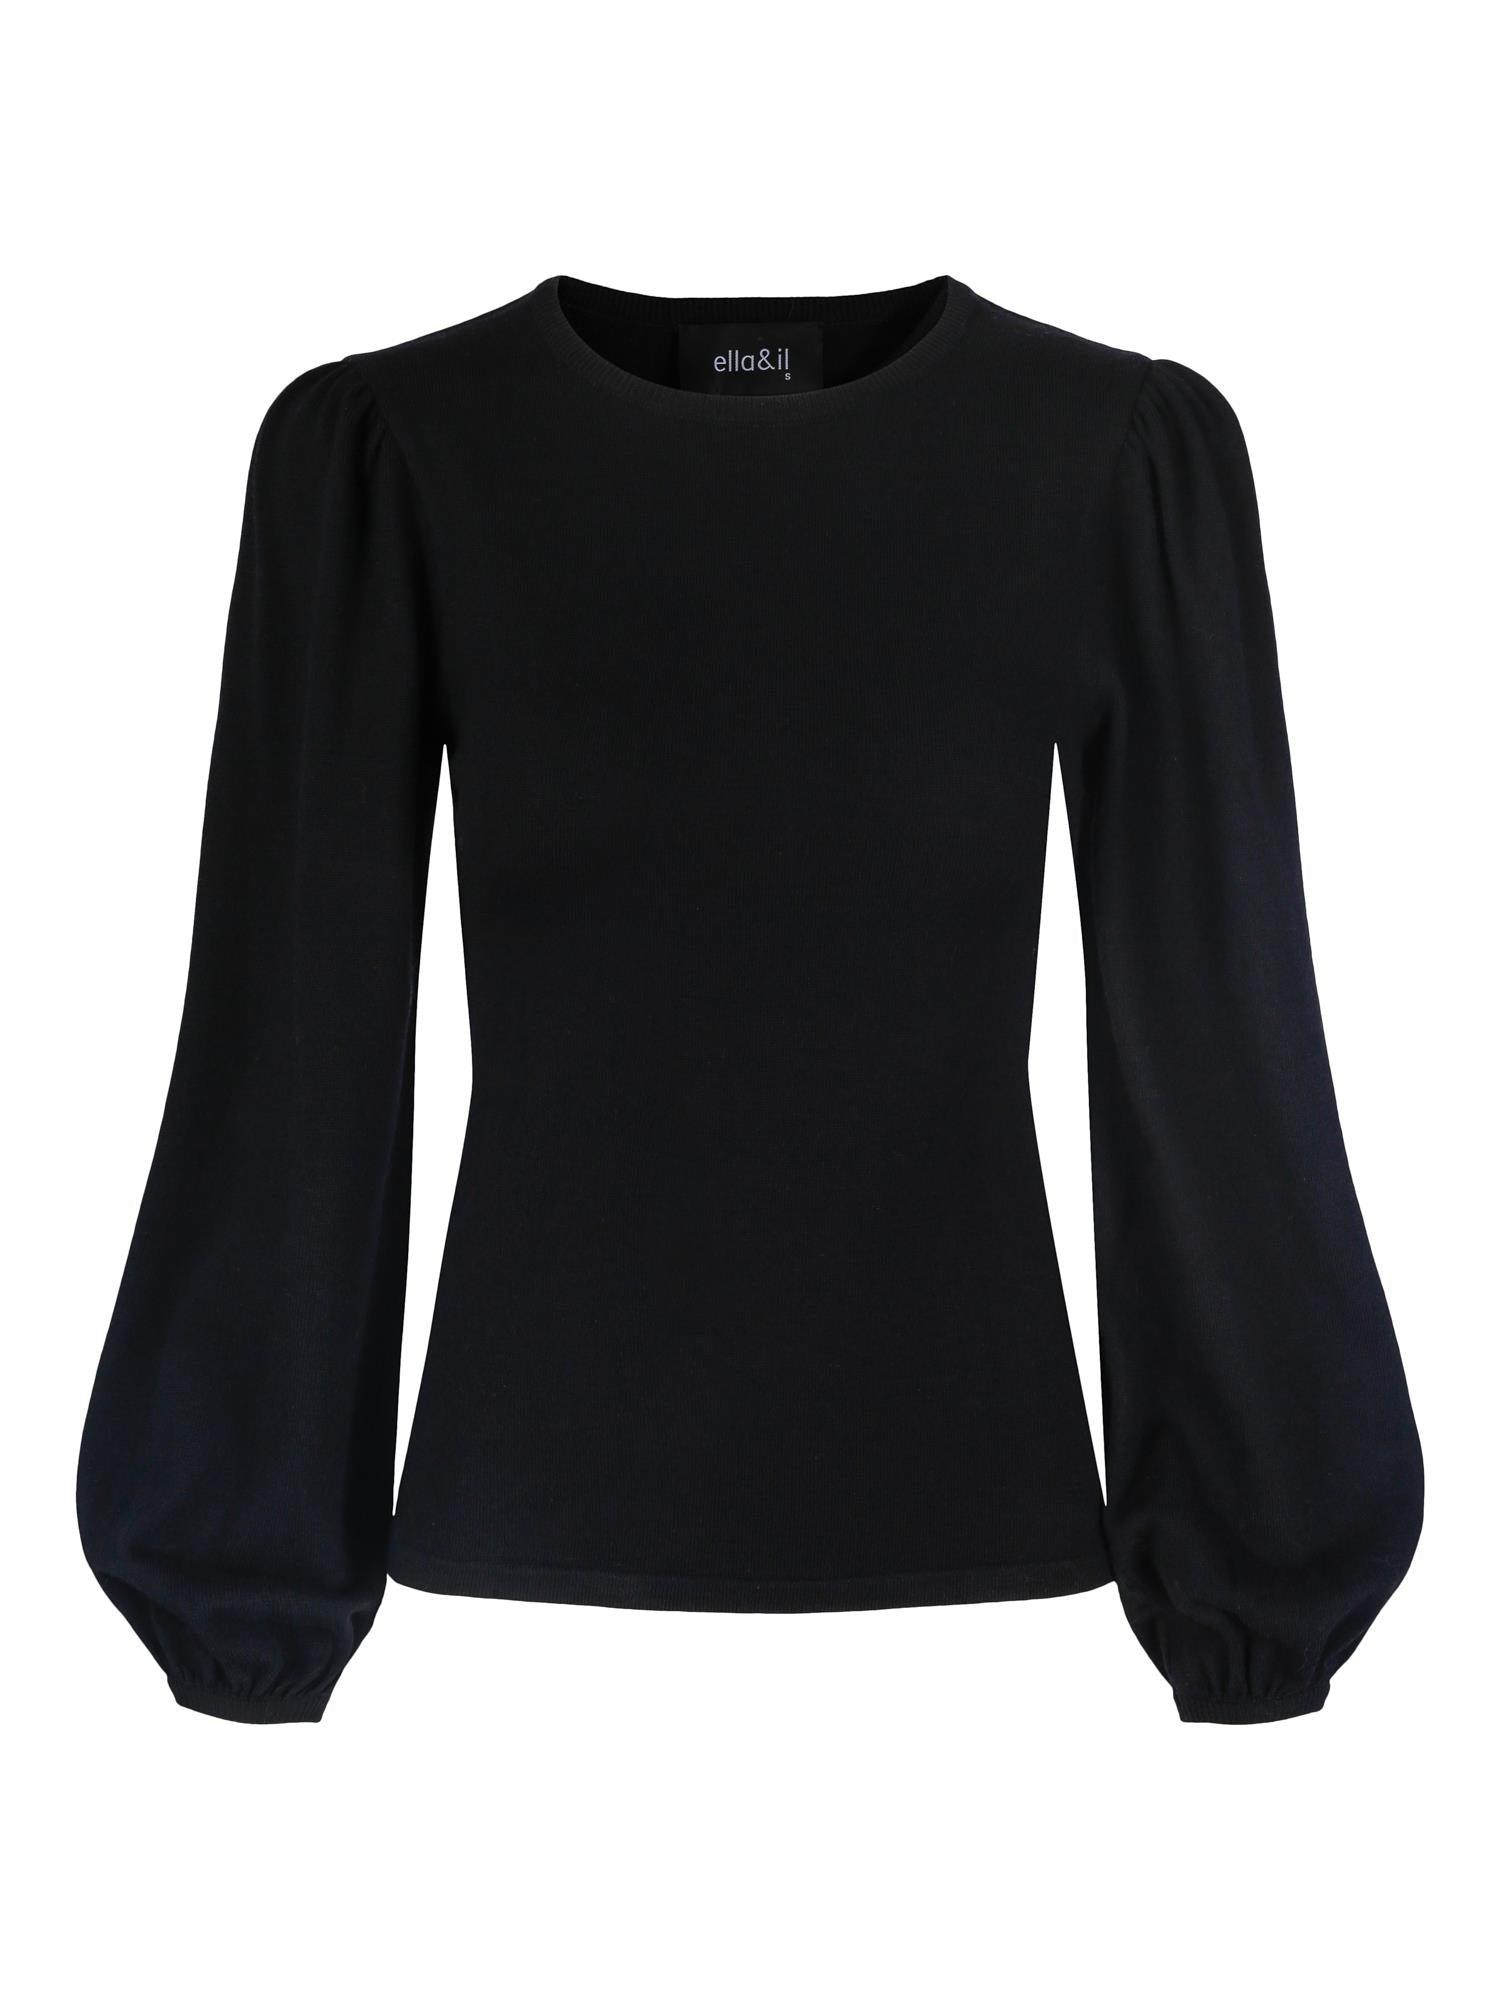 Frida Merino Sweater Black - No22 Damplassen